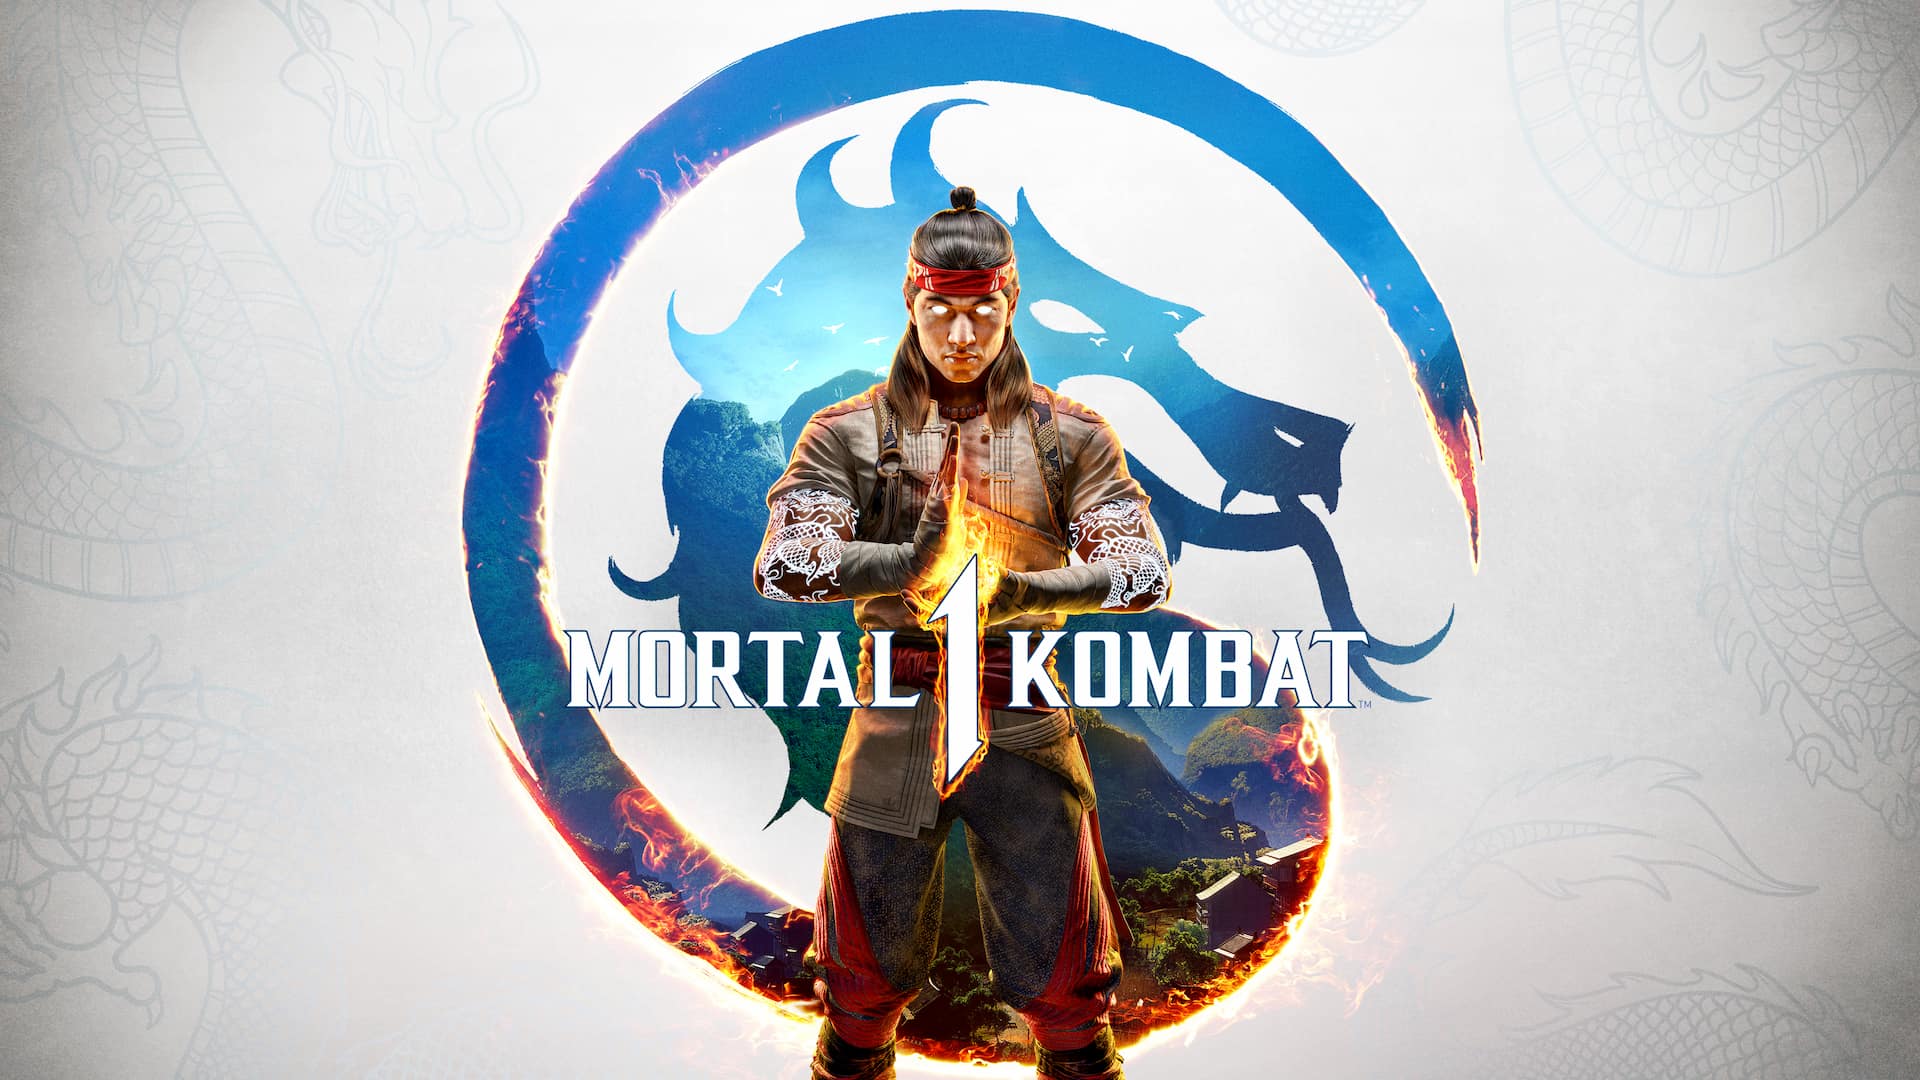 Mortal Kombat: O personagem que não é o que parece ser